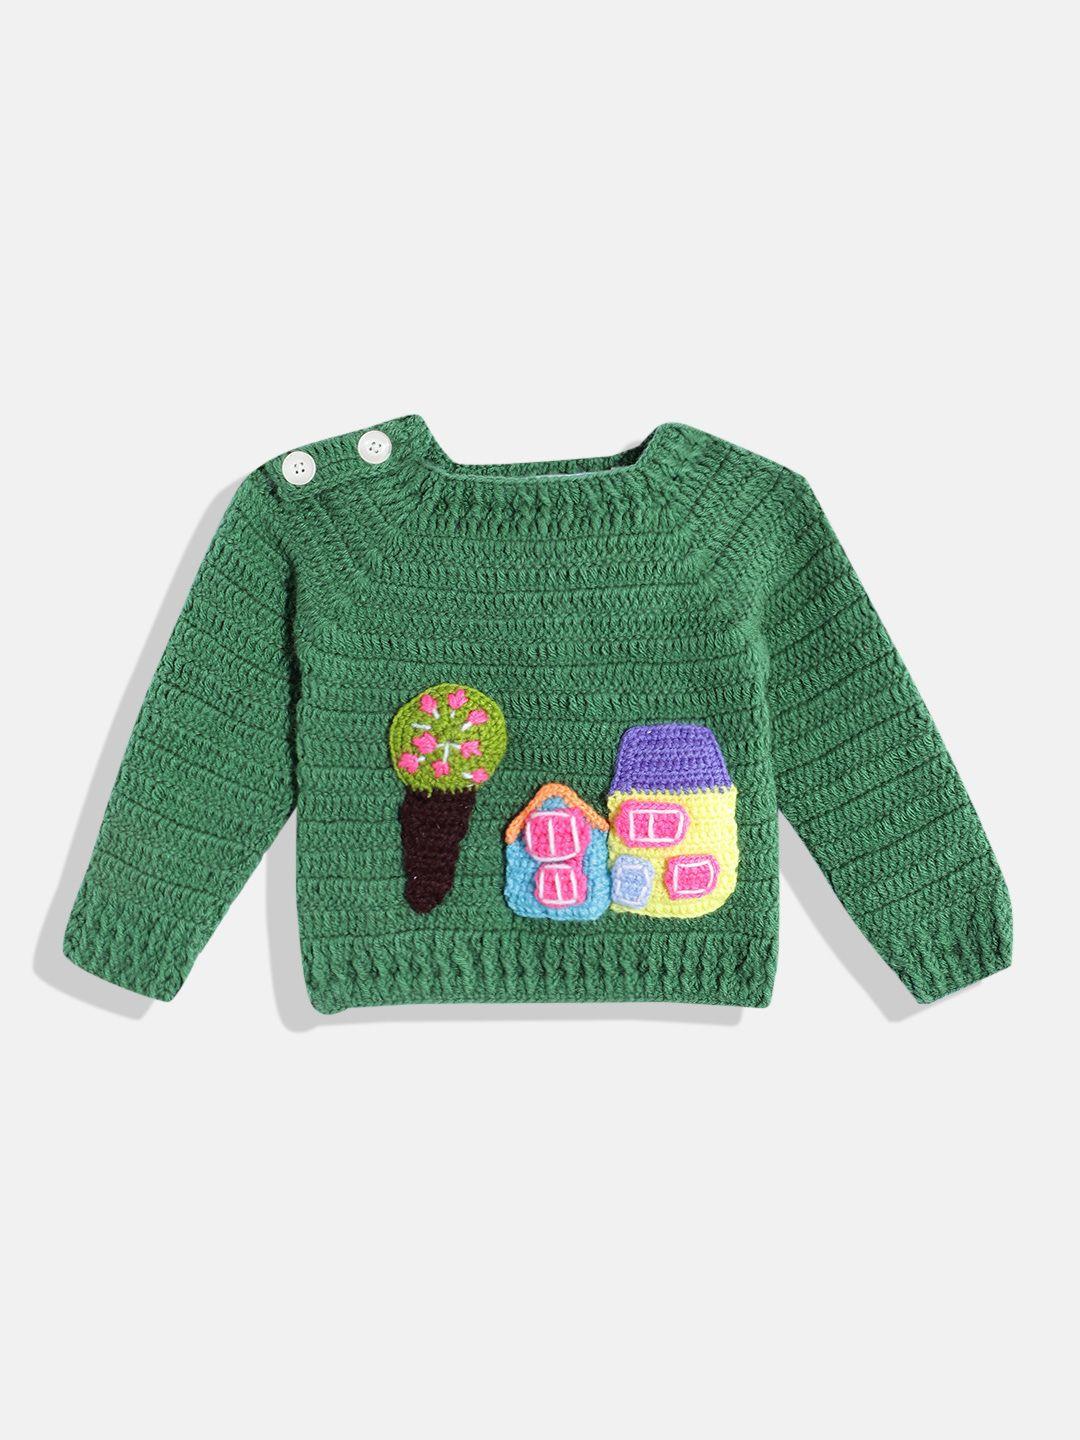 chutput kids conversational crochet woollen pullover